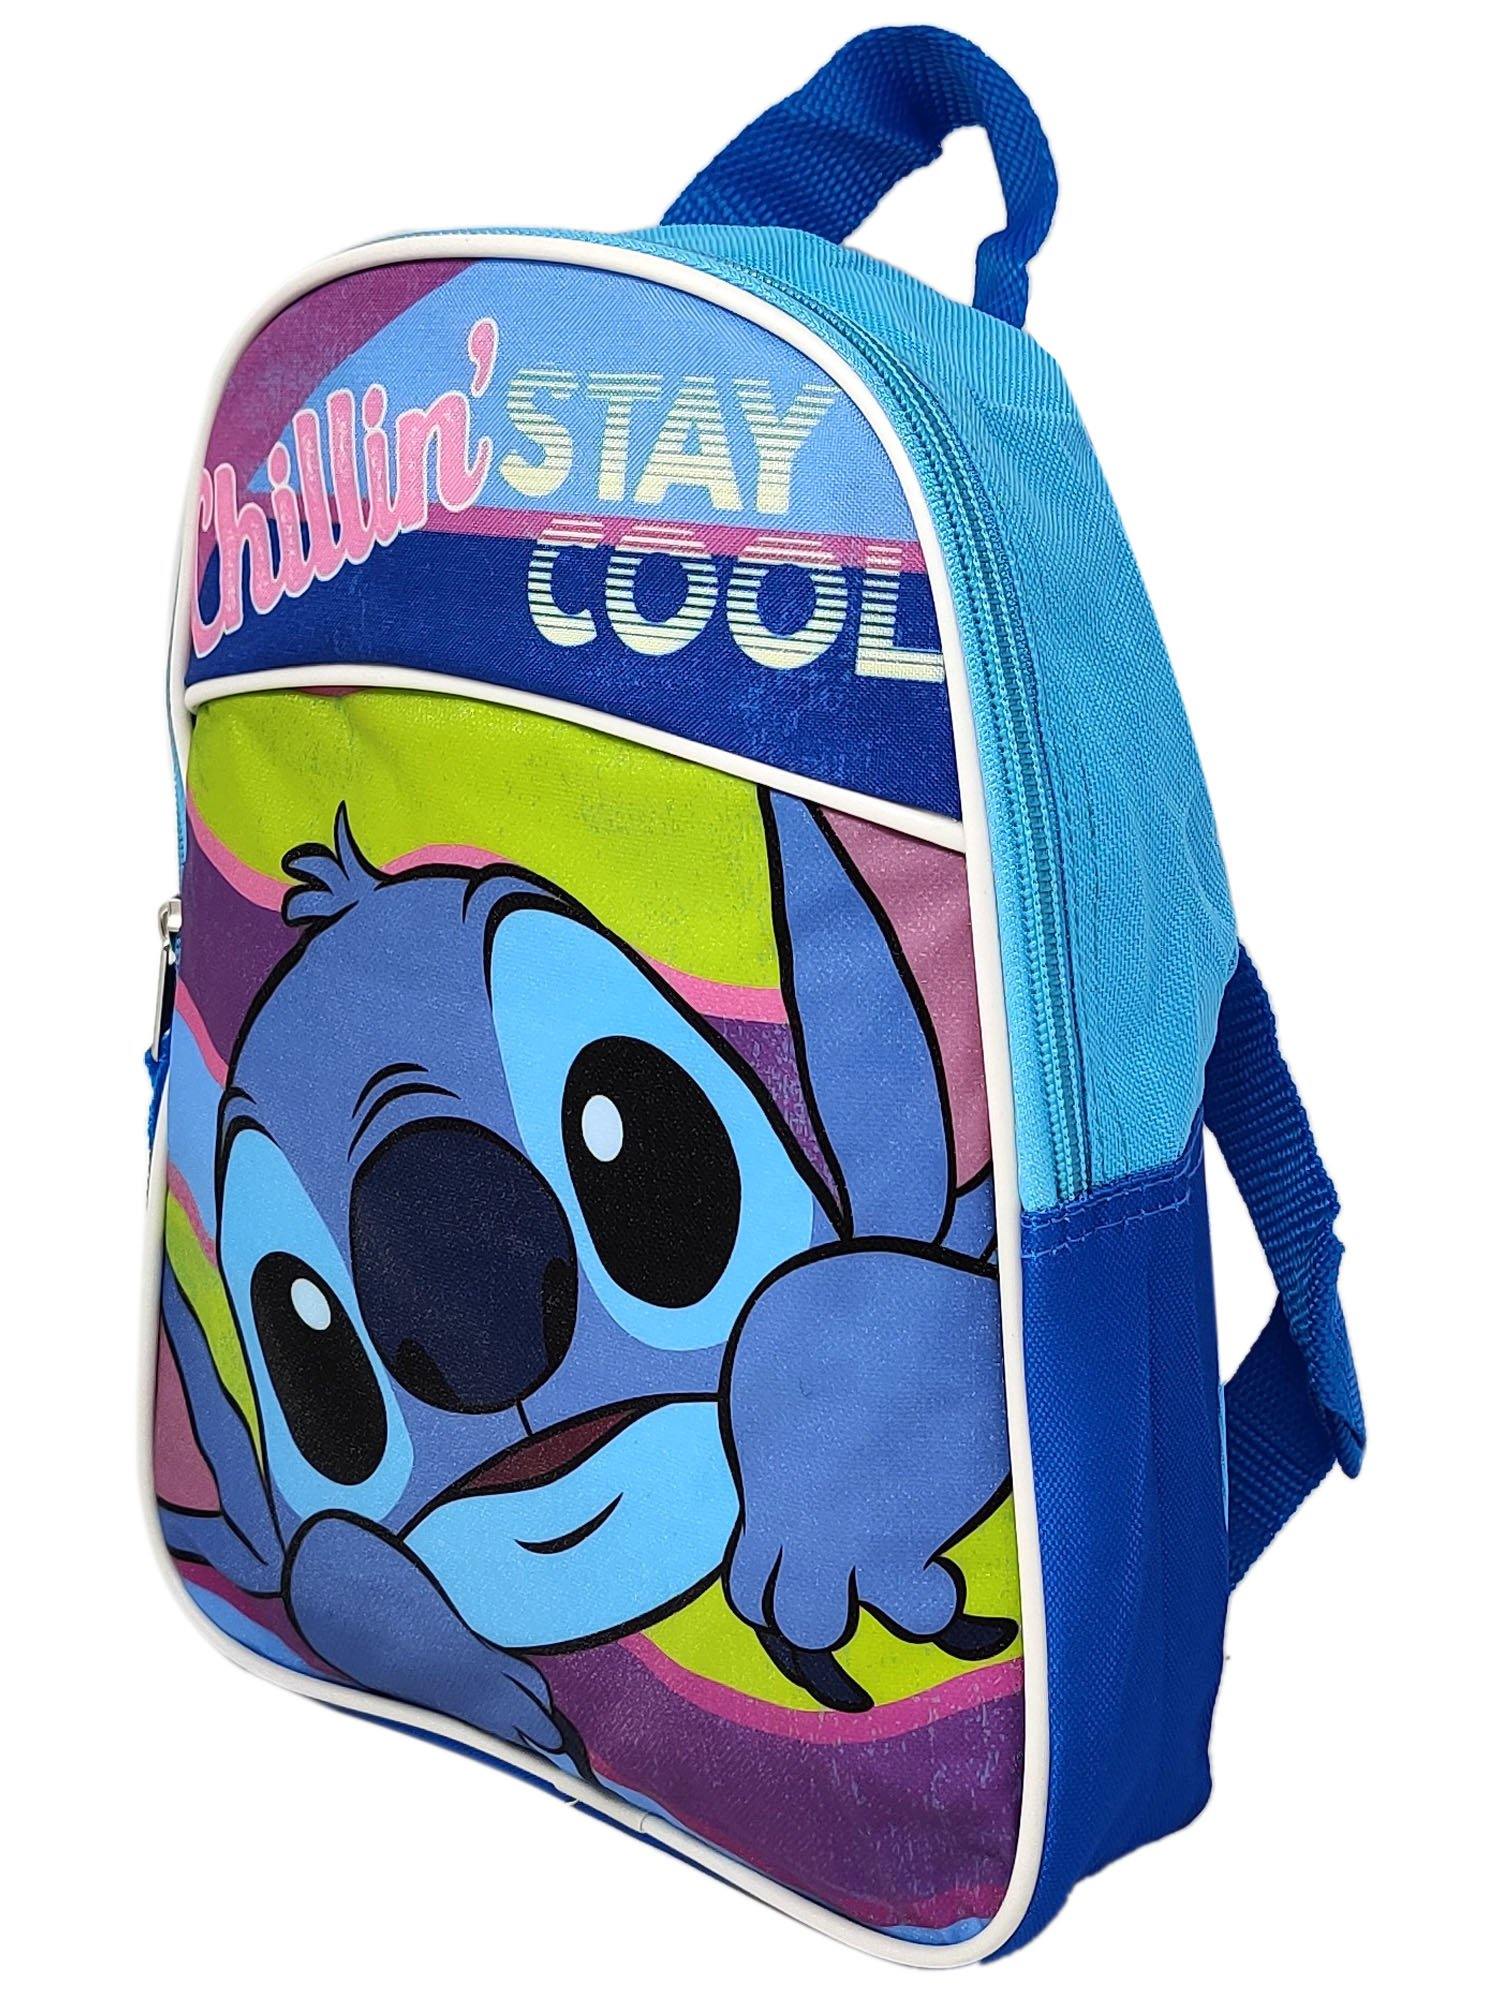 Stitch Cooler Bag, Lilo & Stitch